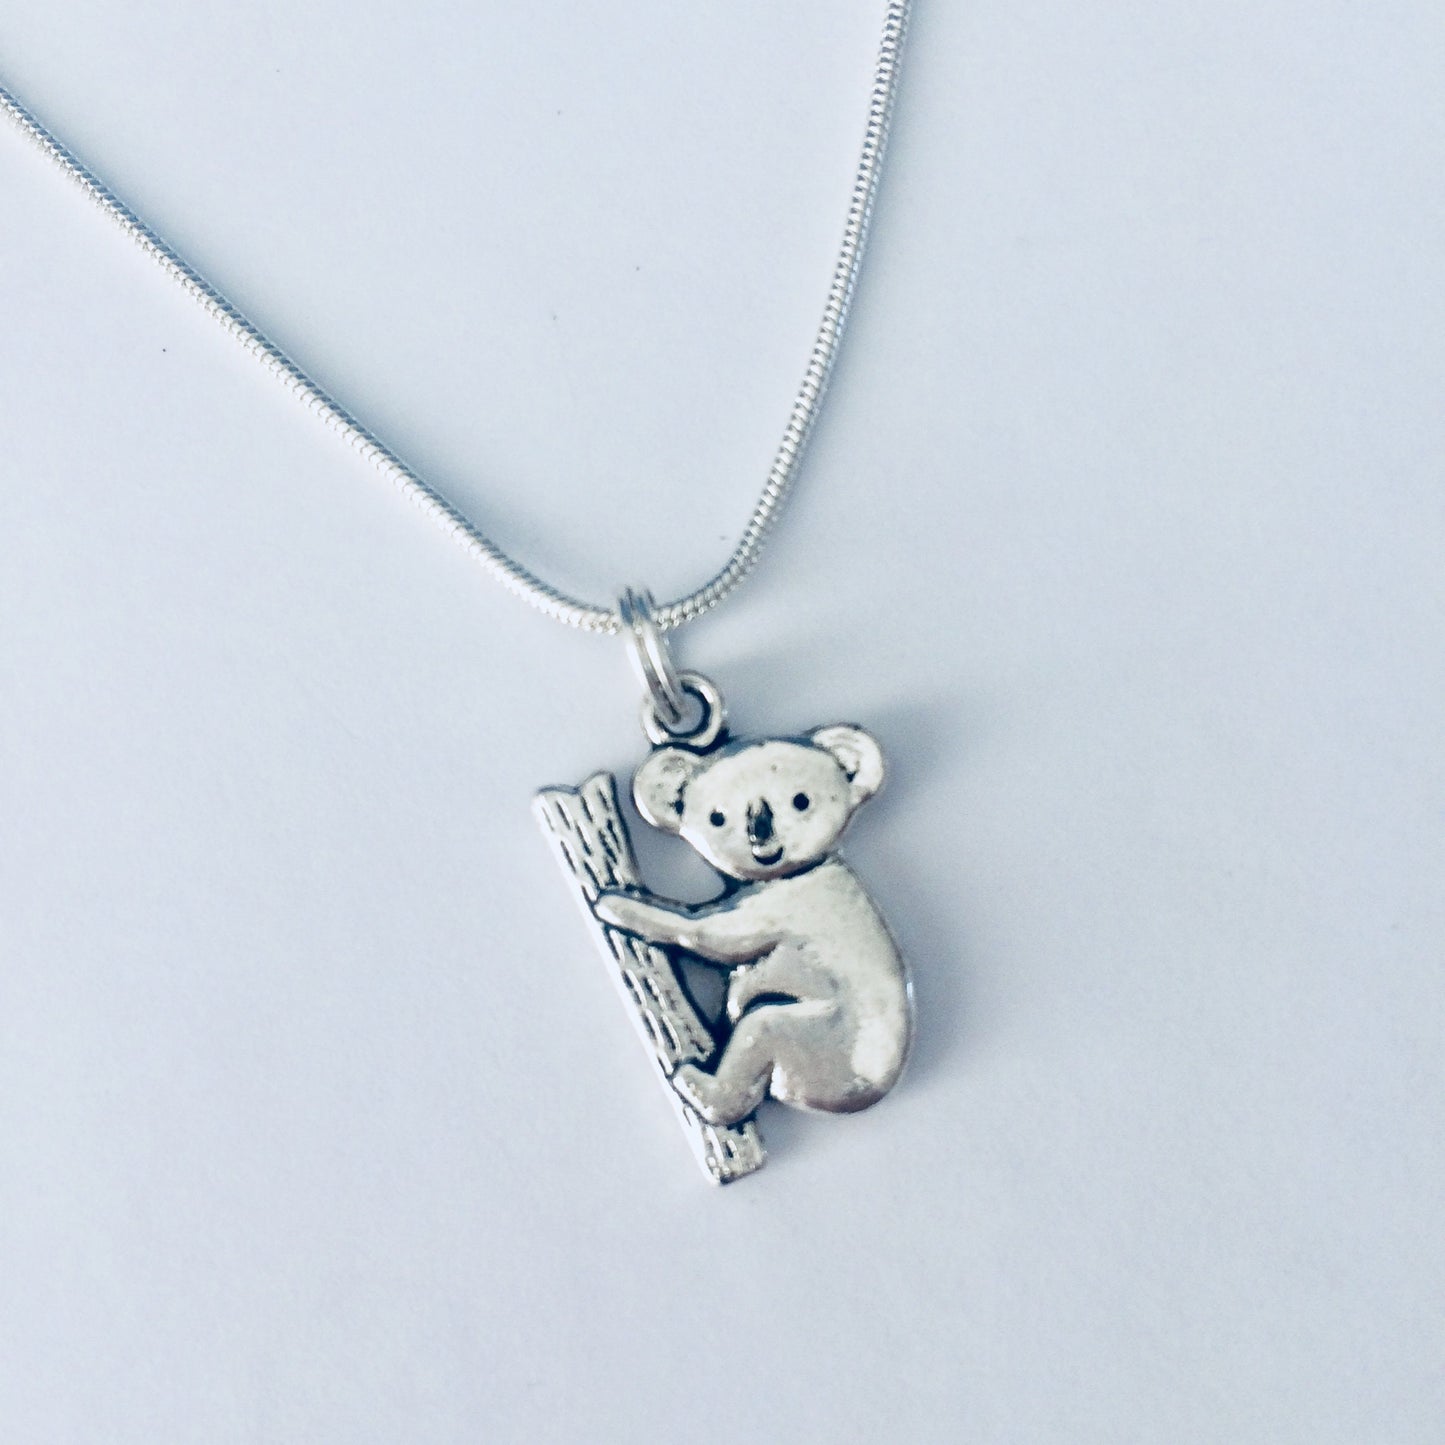 Koala Necklace, Koala Jewelry, Koala Gift Ideas, Koala Related Jewellery, Animal Jewellery, Animal Necklaces, Cute Nature Gift, Koala Lover.